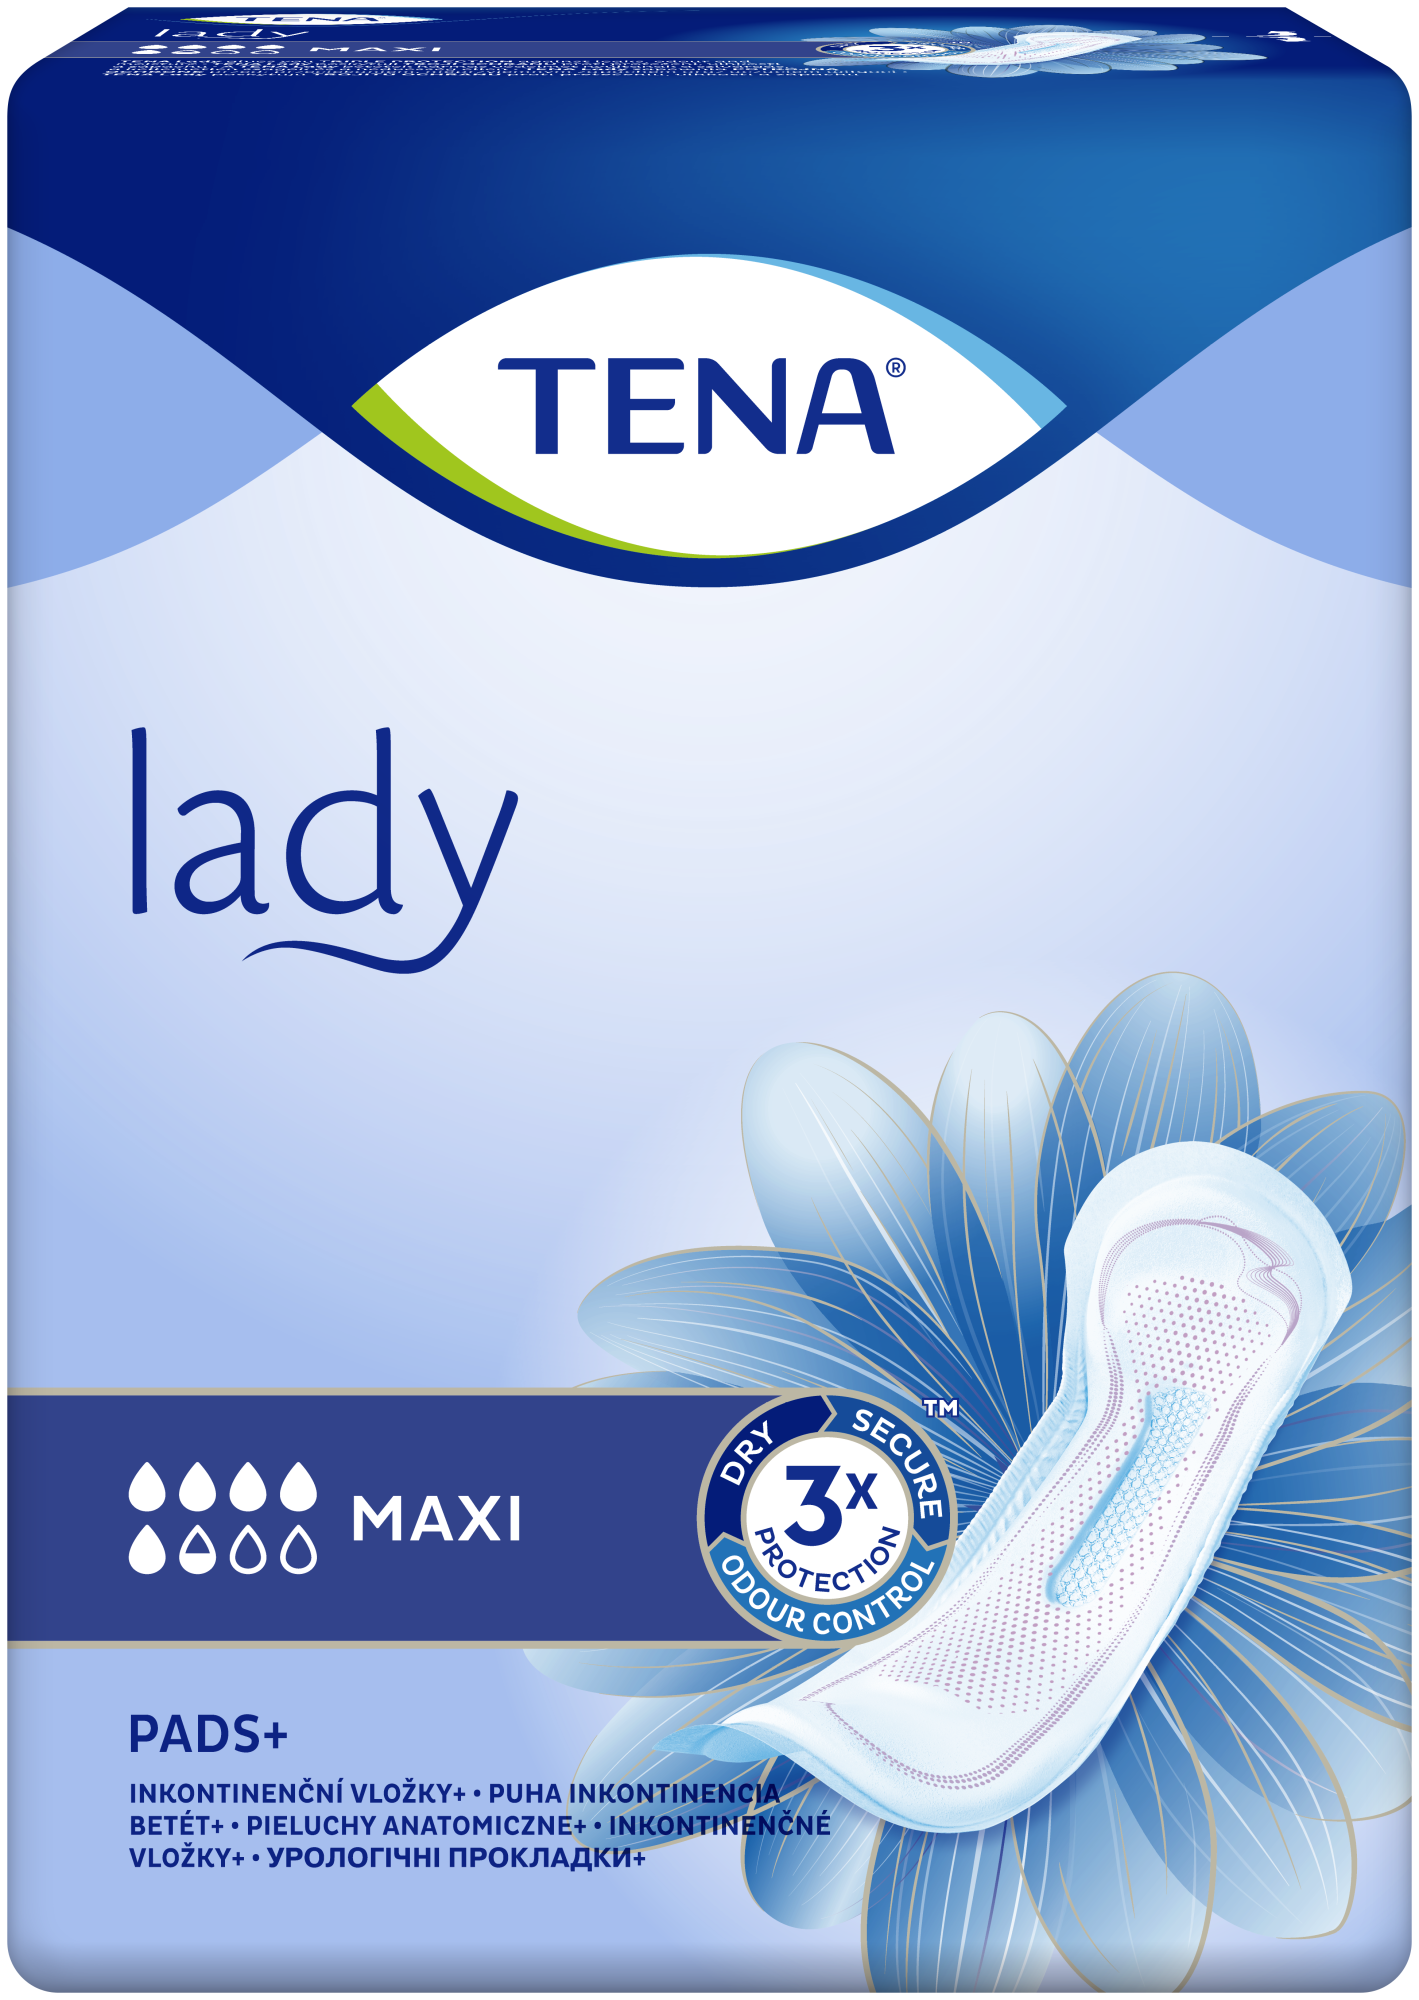 TENA Lady Maxi - TENA